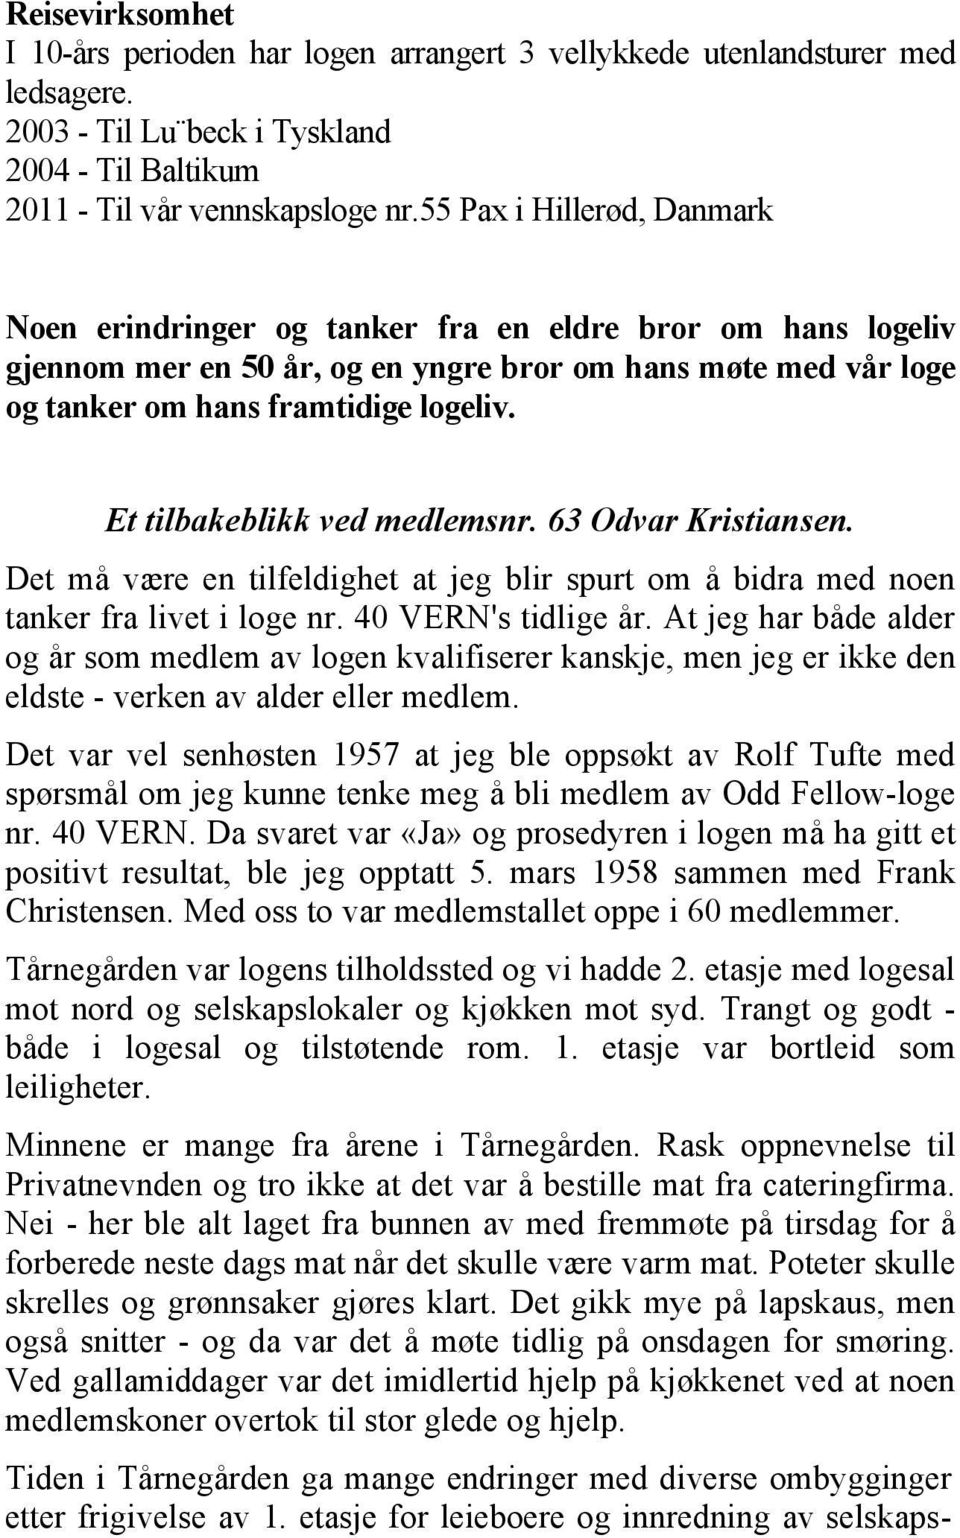 Et tilbakeblikk ved medlemsnr. 63 Odvar Kristiansen. Det må være en tilfeldighet at jeg blir spurt om å bidra med noen tanker fra livet i loge nr. 40 VERN's tidlige år.